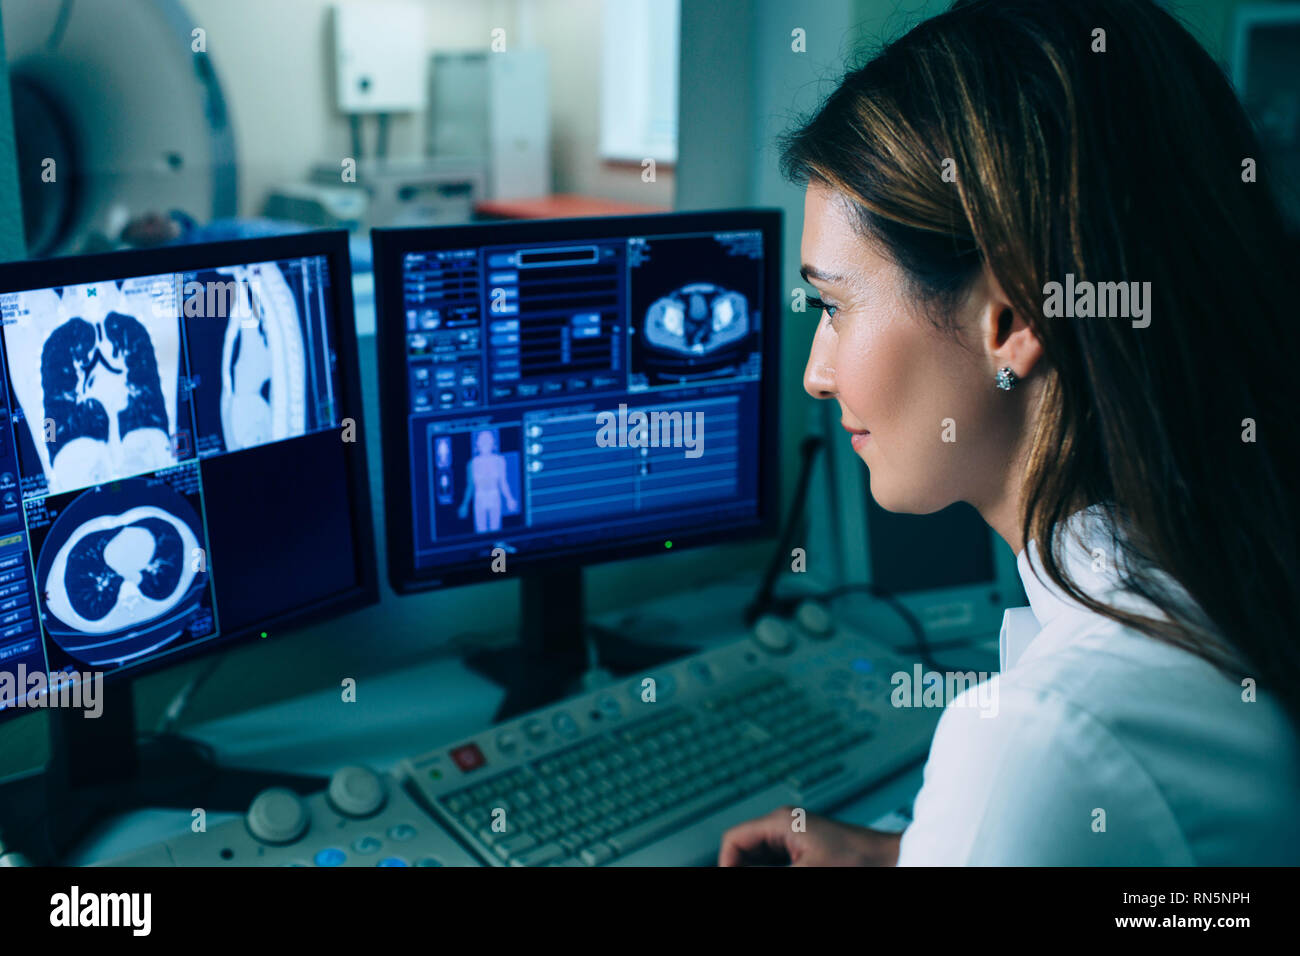 Radiologen ein CT-Scan. Ärztin, CT von Kontrollraum im Krankenhaus Scan Stockfoto